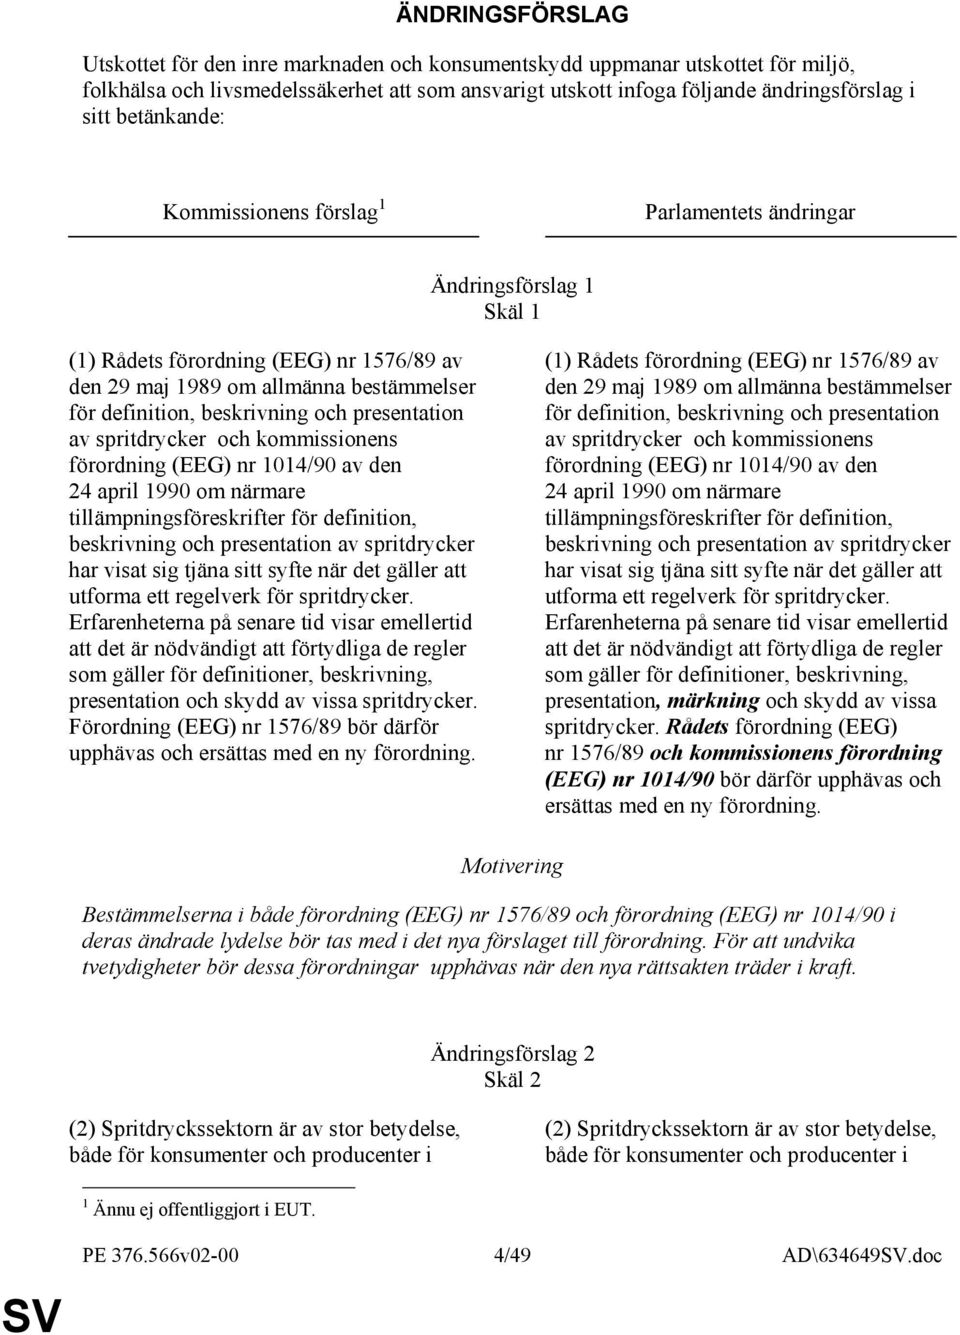 presentation av spritdrycker och kommissionens förordning (EEG) nr 1014/90 av den 24 april 1990 om närmare tillämpningsföreskrifter för definition, beskrivning och presentation av spritdrycker har